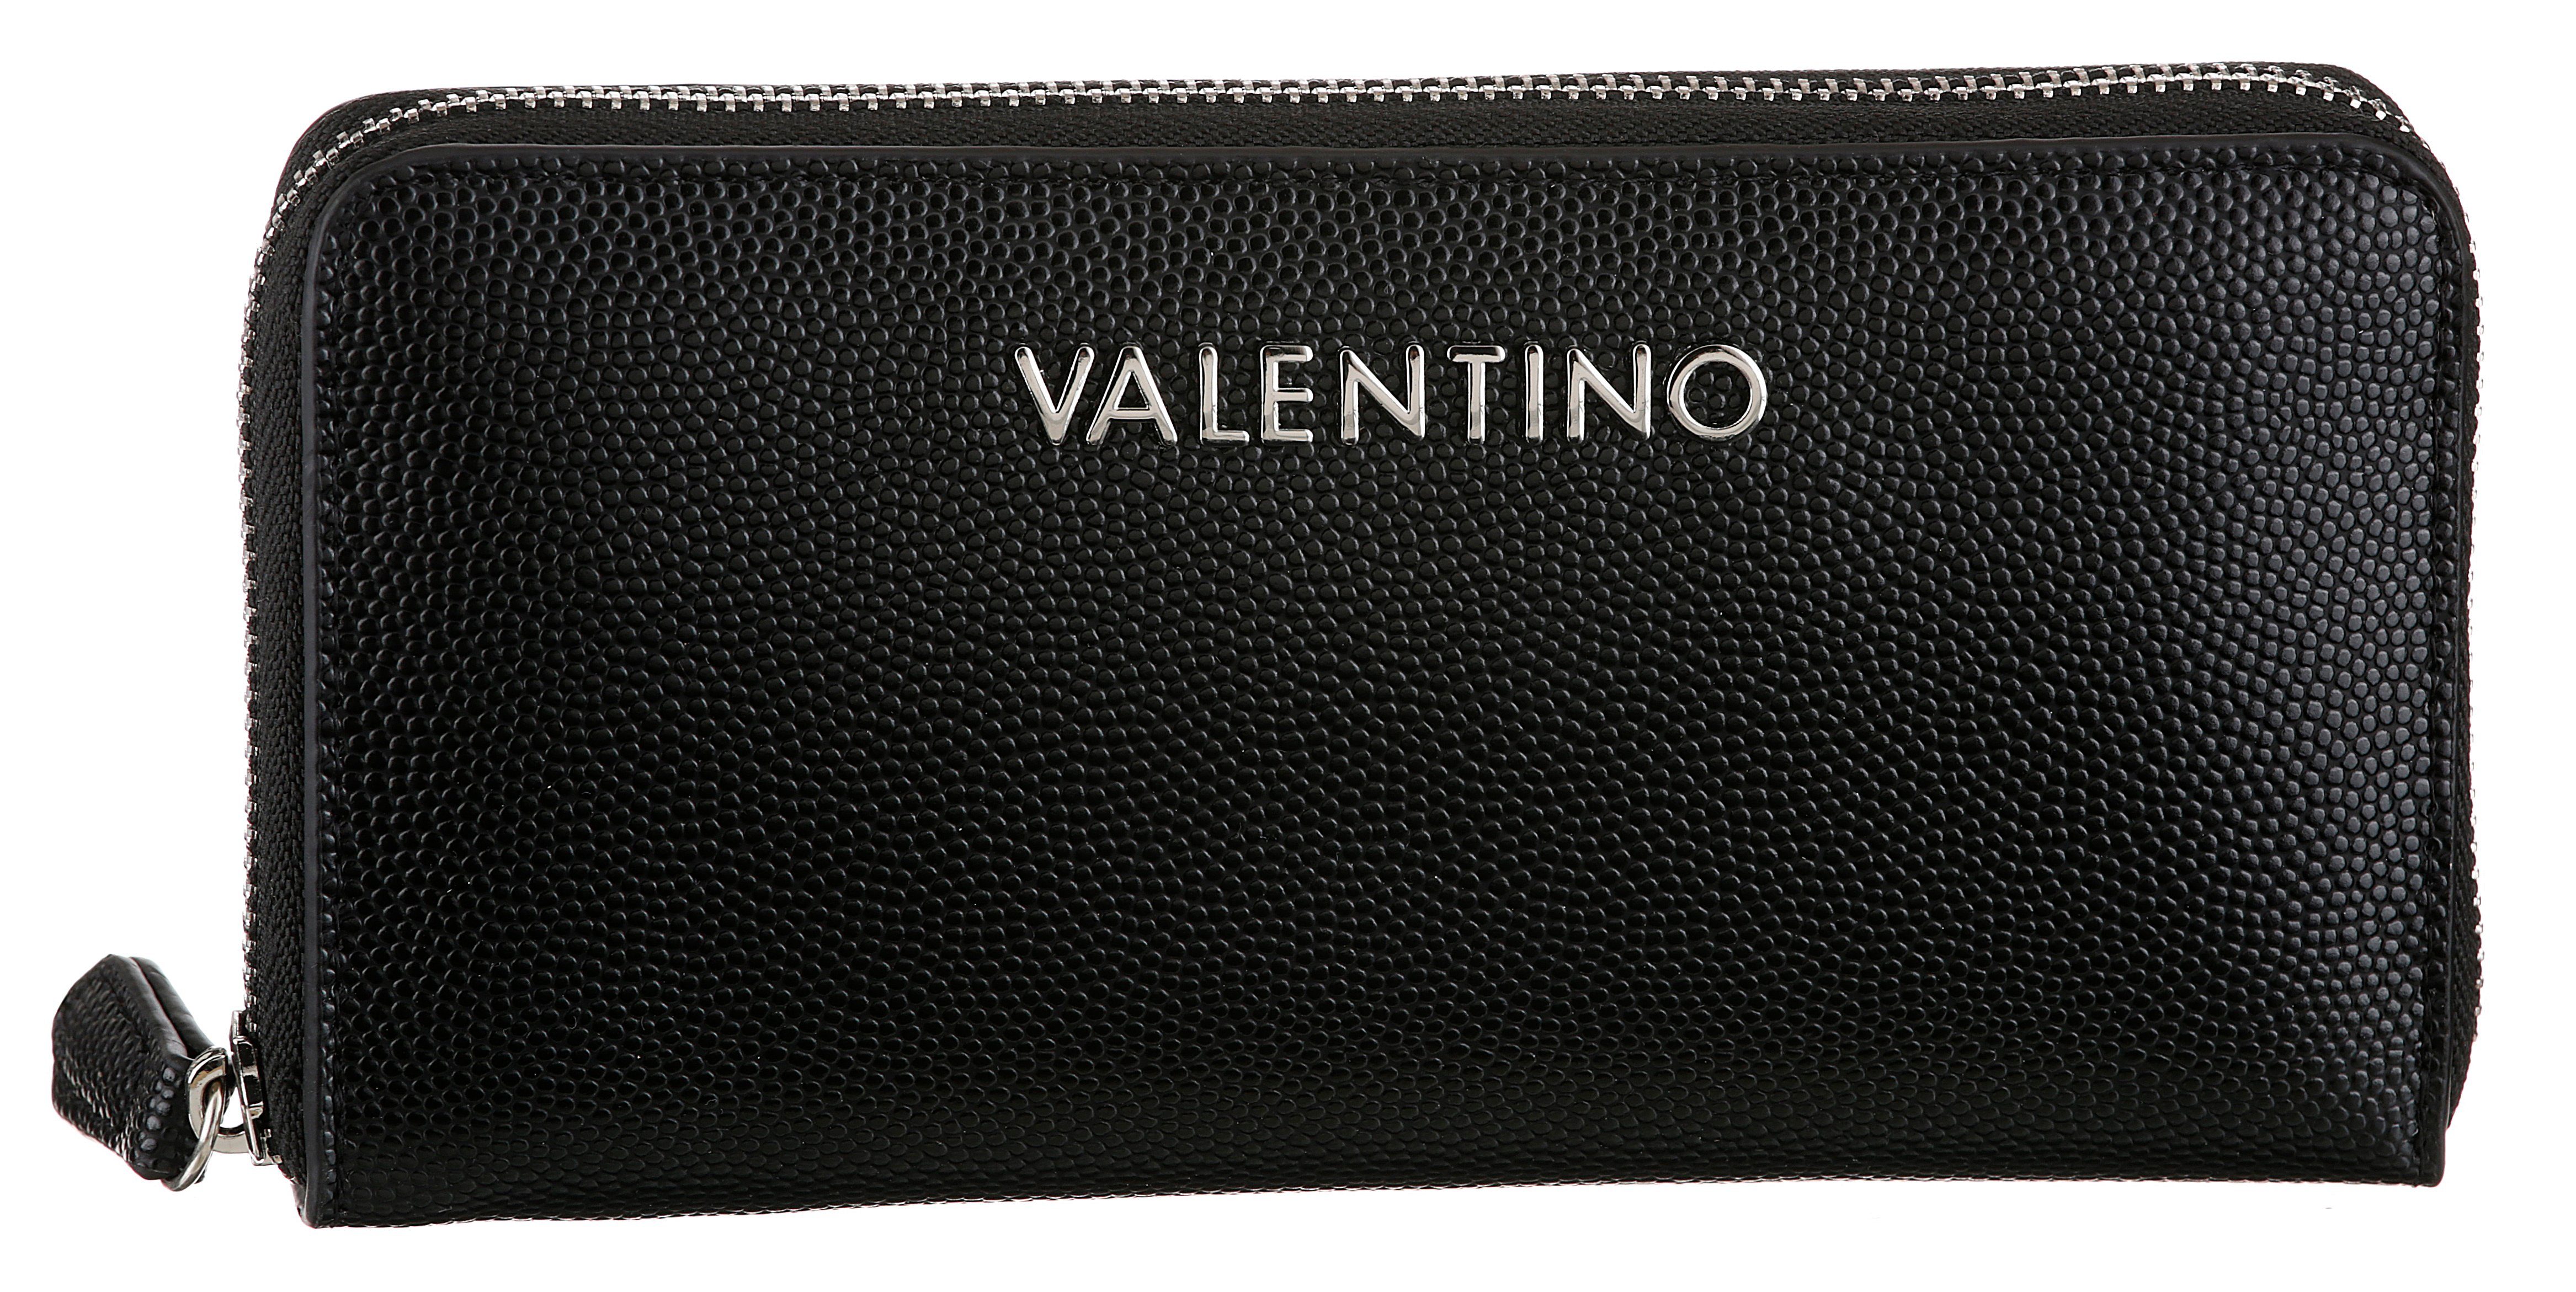 VALENTINO BAGS Geldbörse DIVINA, mit leicht genarbter Oberfläche und silberfarnene Details schwarz